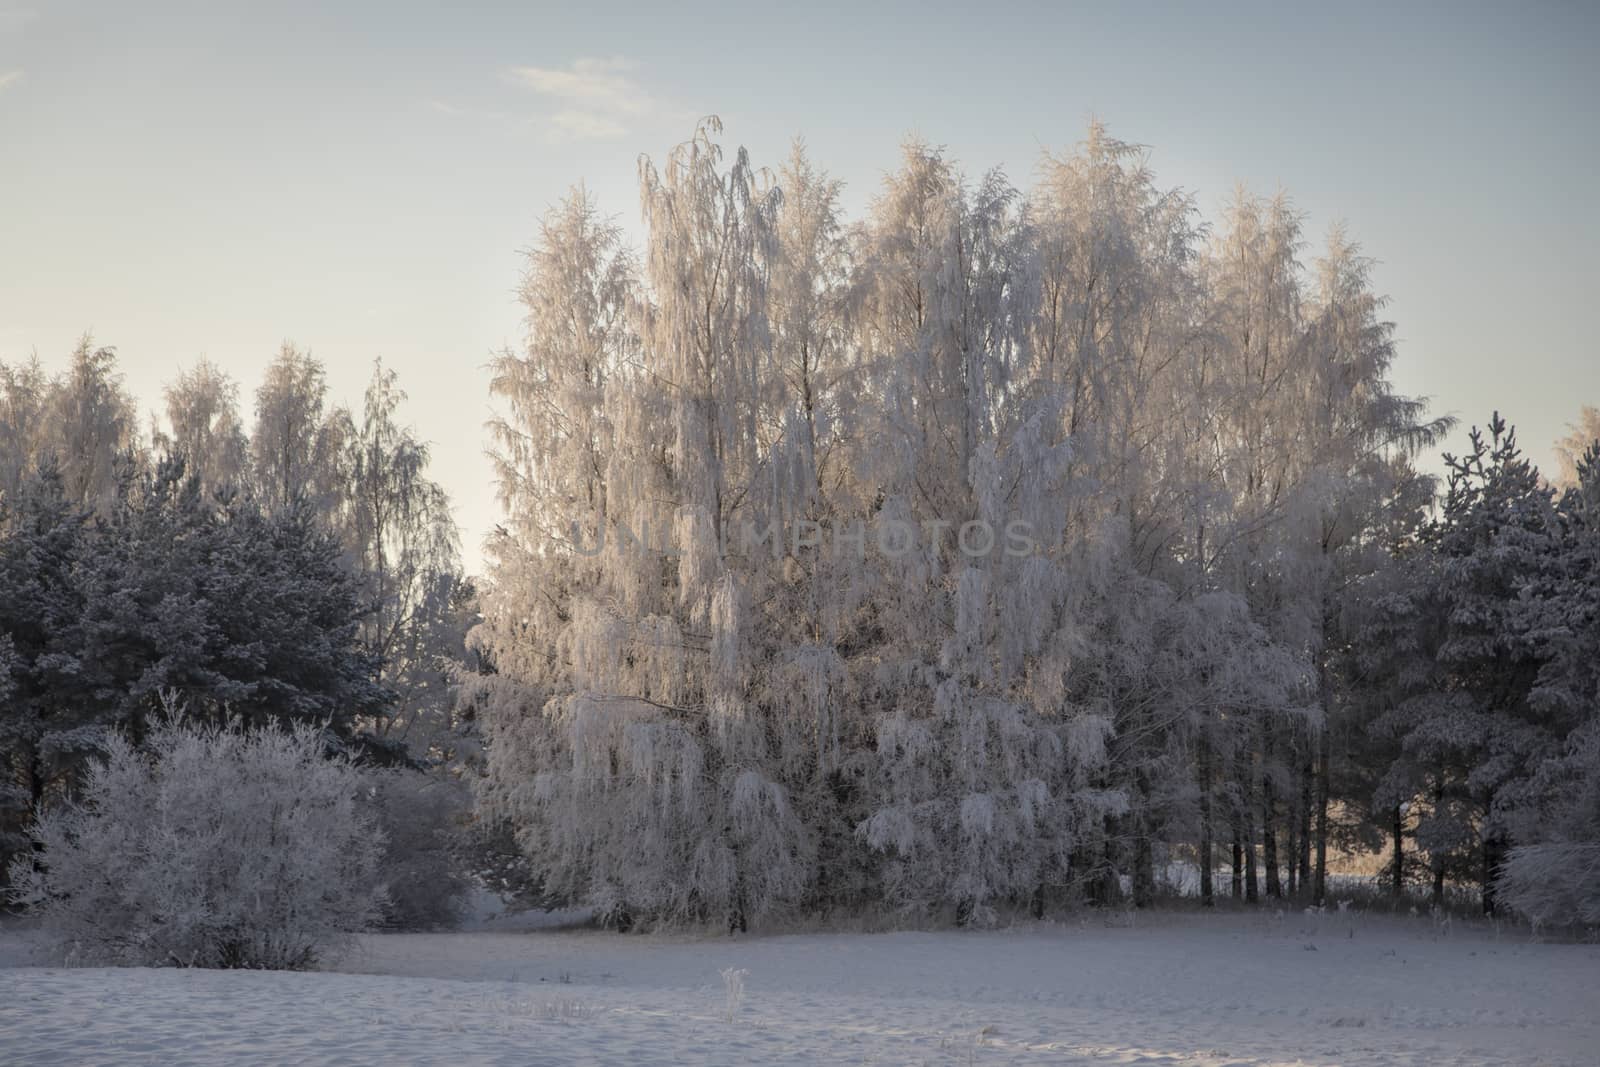 Winter landscape from Pori, Finland by leorantala